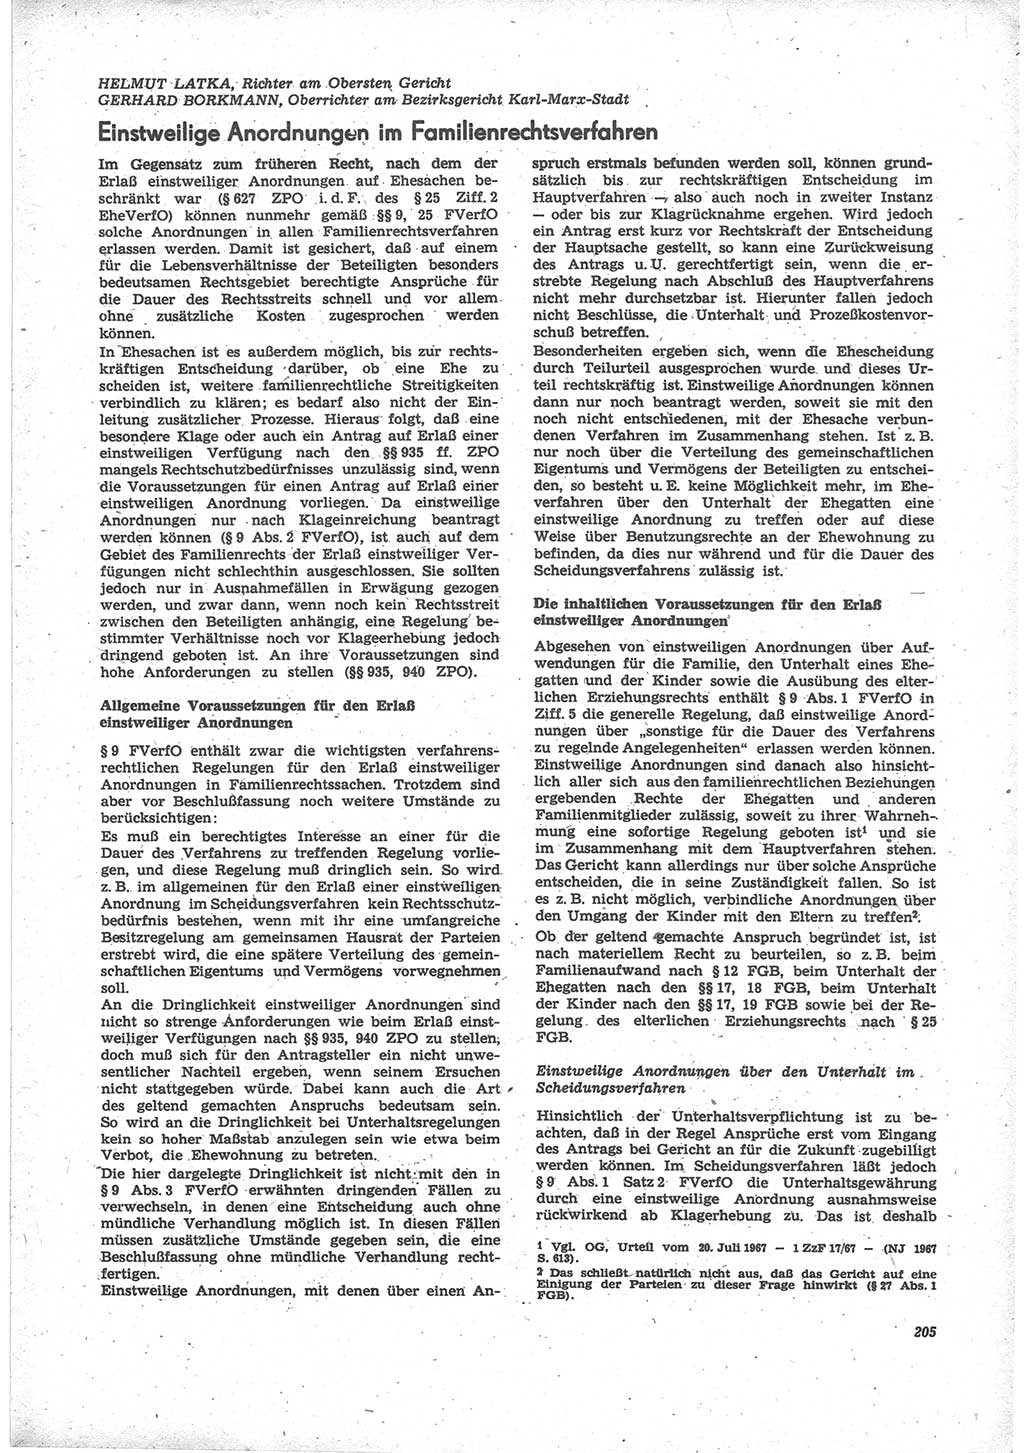 Neue Justiz (NJ), Zeitschrift für Recht und Rechtswissenschaft [Deutsche Demokratische Republik (DDR)], 24. Jahrgang 1970, Seite 205 (NJ DDR 1970, S. 205)